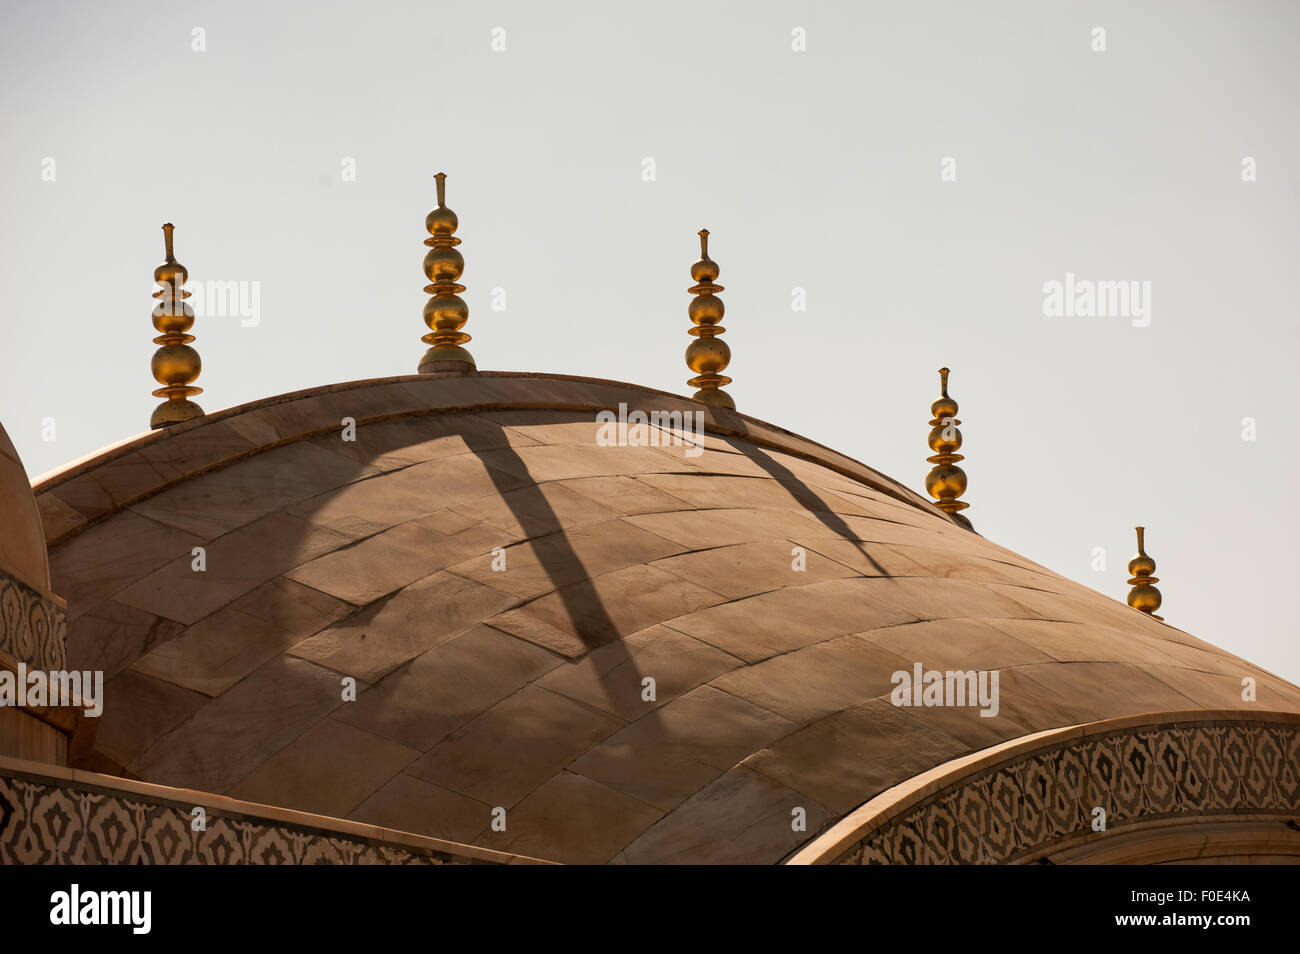 Jaipur, India. Dettaglio della lastra di pietra con il tetto più pinnacoli formata di sfere e i dischi in ambra (AMER) Fort. Foto Stock